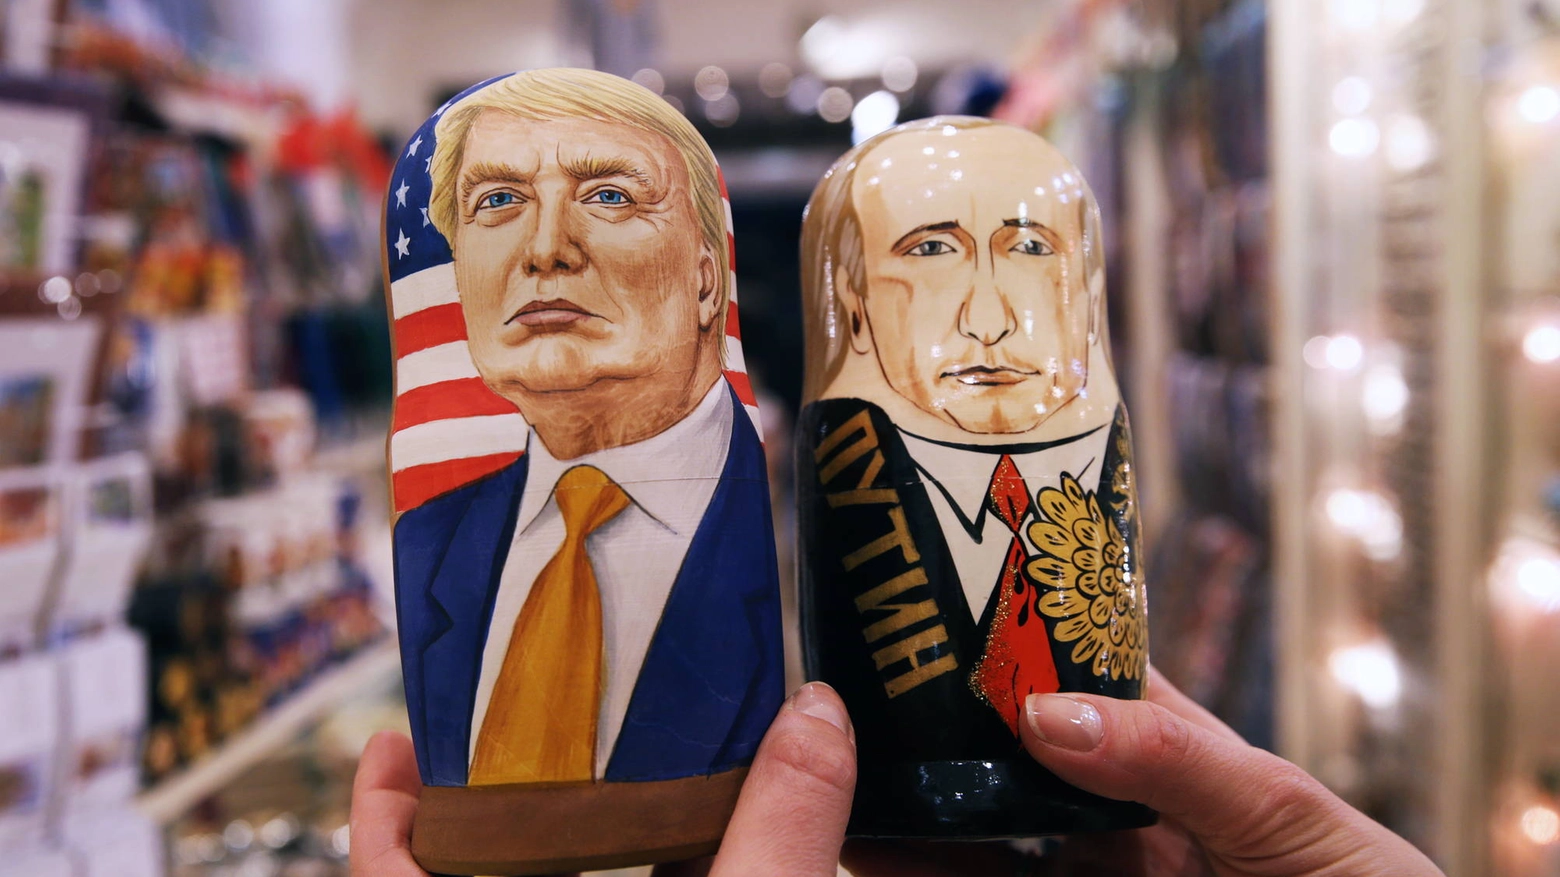 Bambole matrioska dedicate a Donald Trump e Vladimir Putin (Olycom)